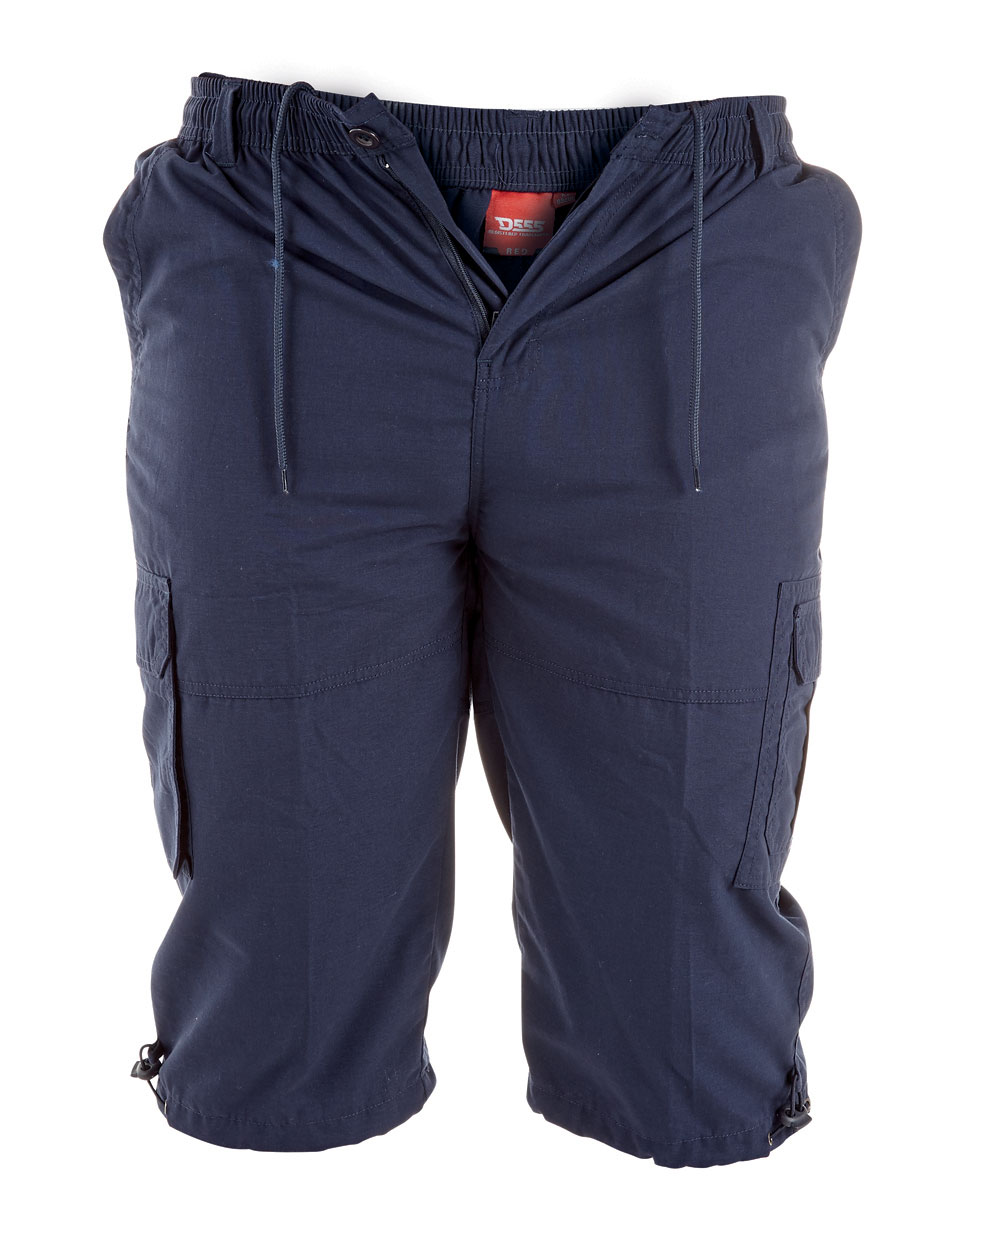 Pantalón Capri de carga azul marino D555 talla King para hombre con bolsillos para piernas (MASON) - Imagen 1 de 1